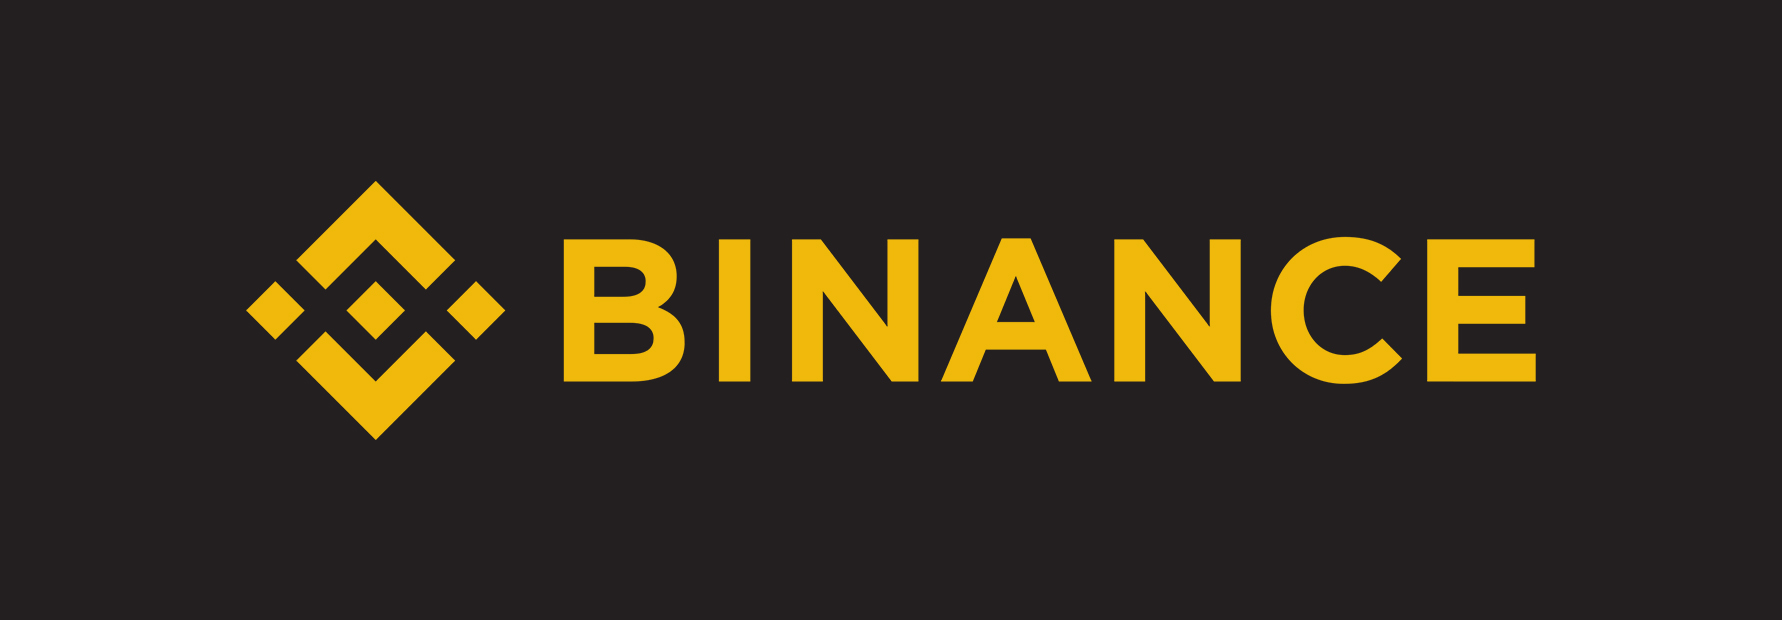 binance-logo.jpg